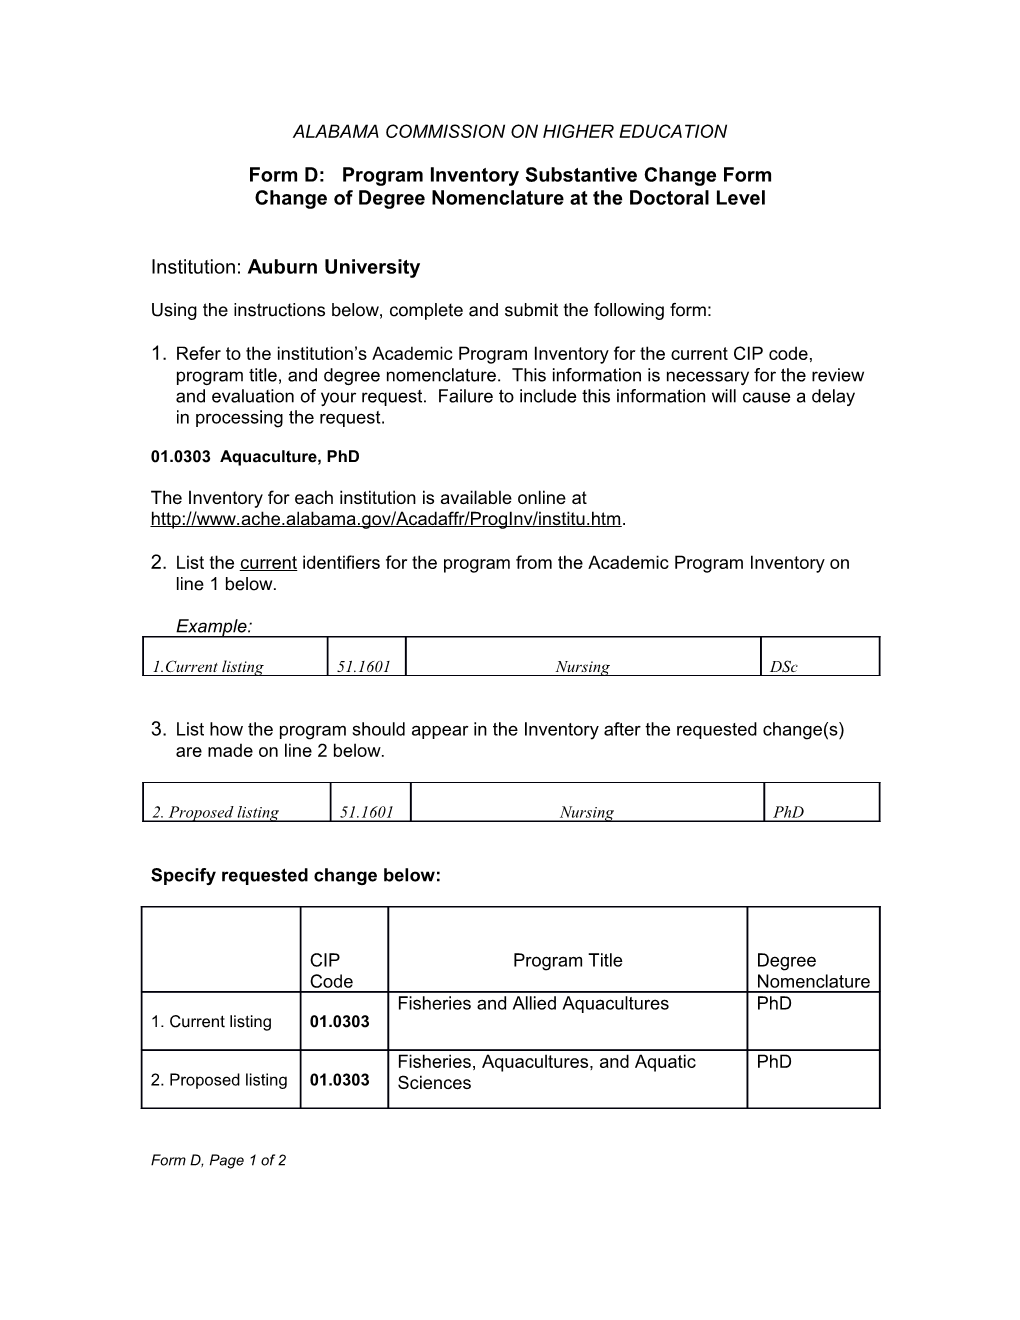 Form D: Program Inventory Substantive Change Form